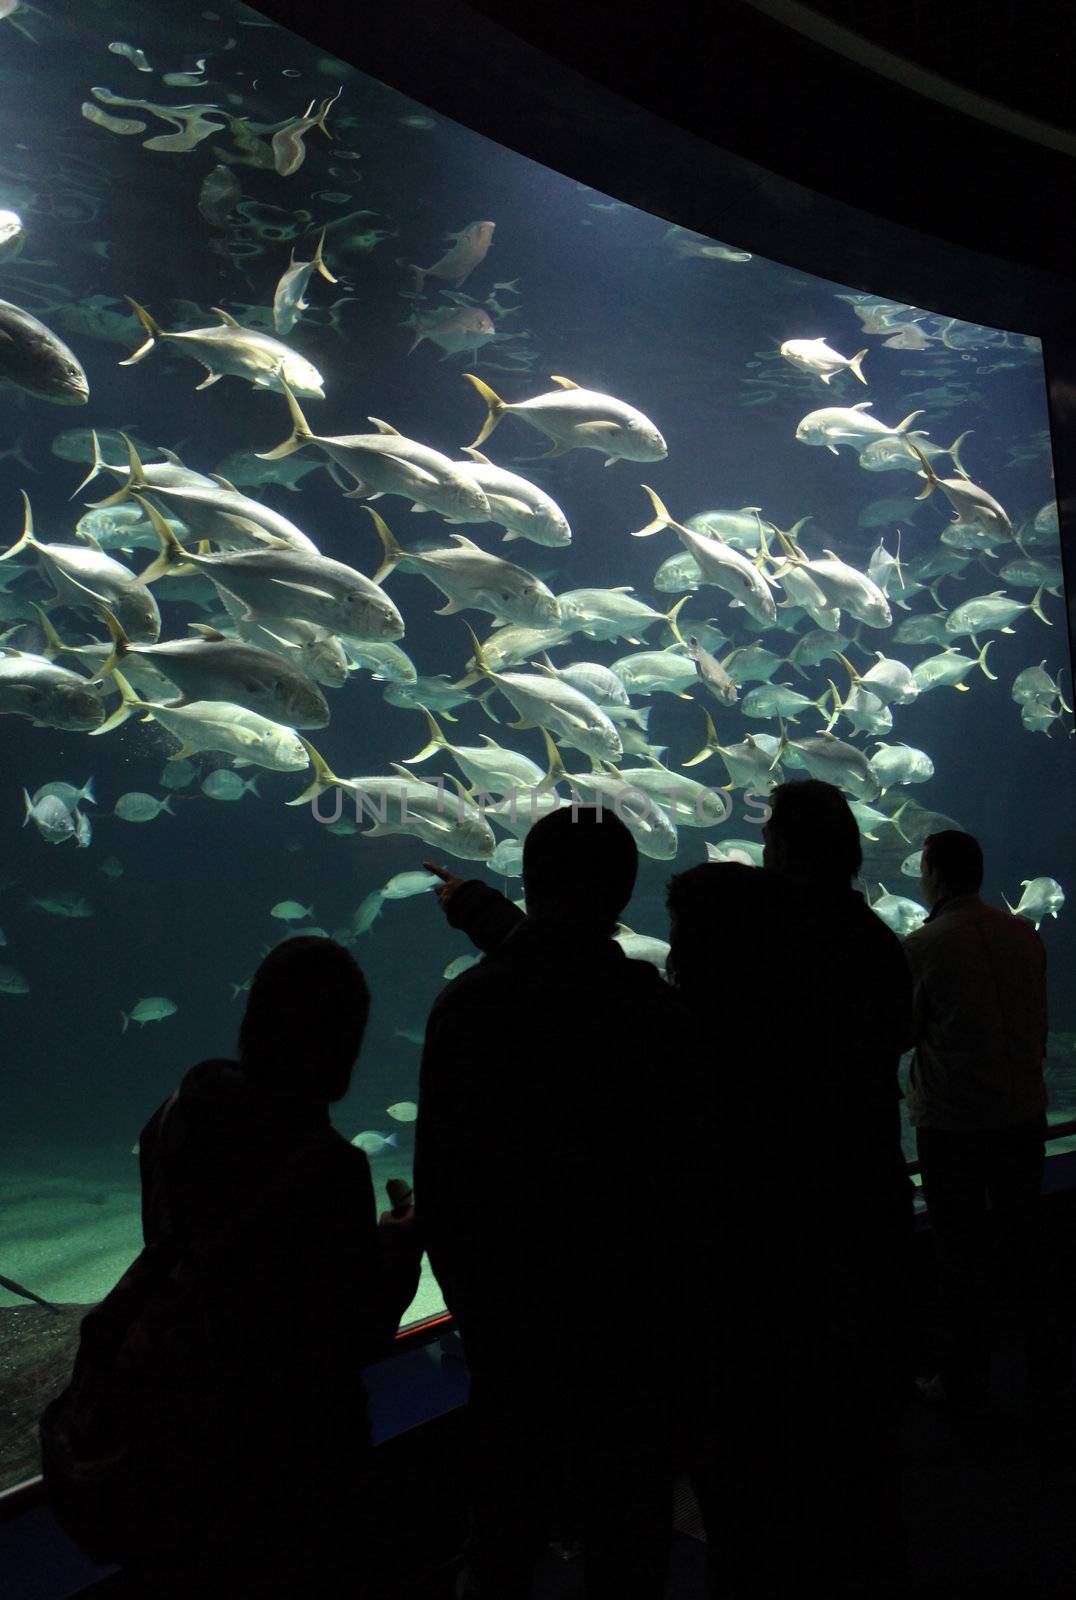 Aquarium by carloscastilla